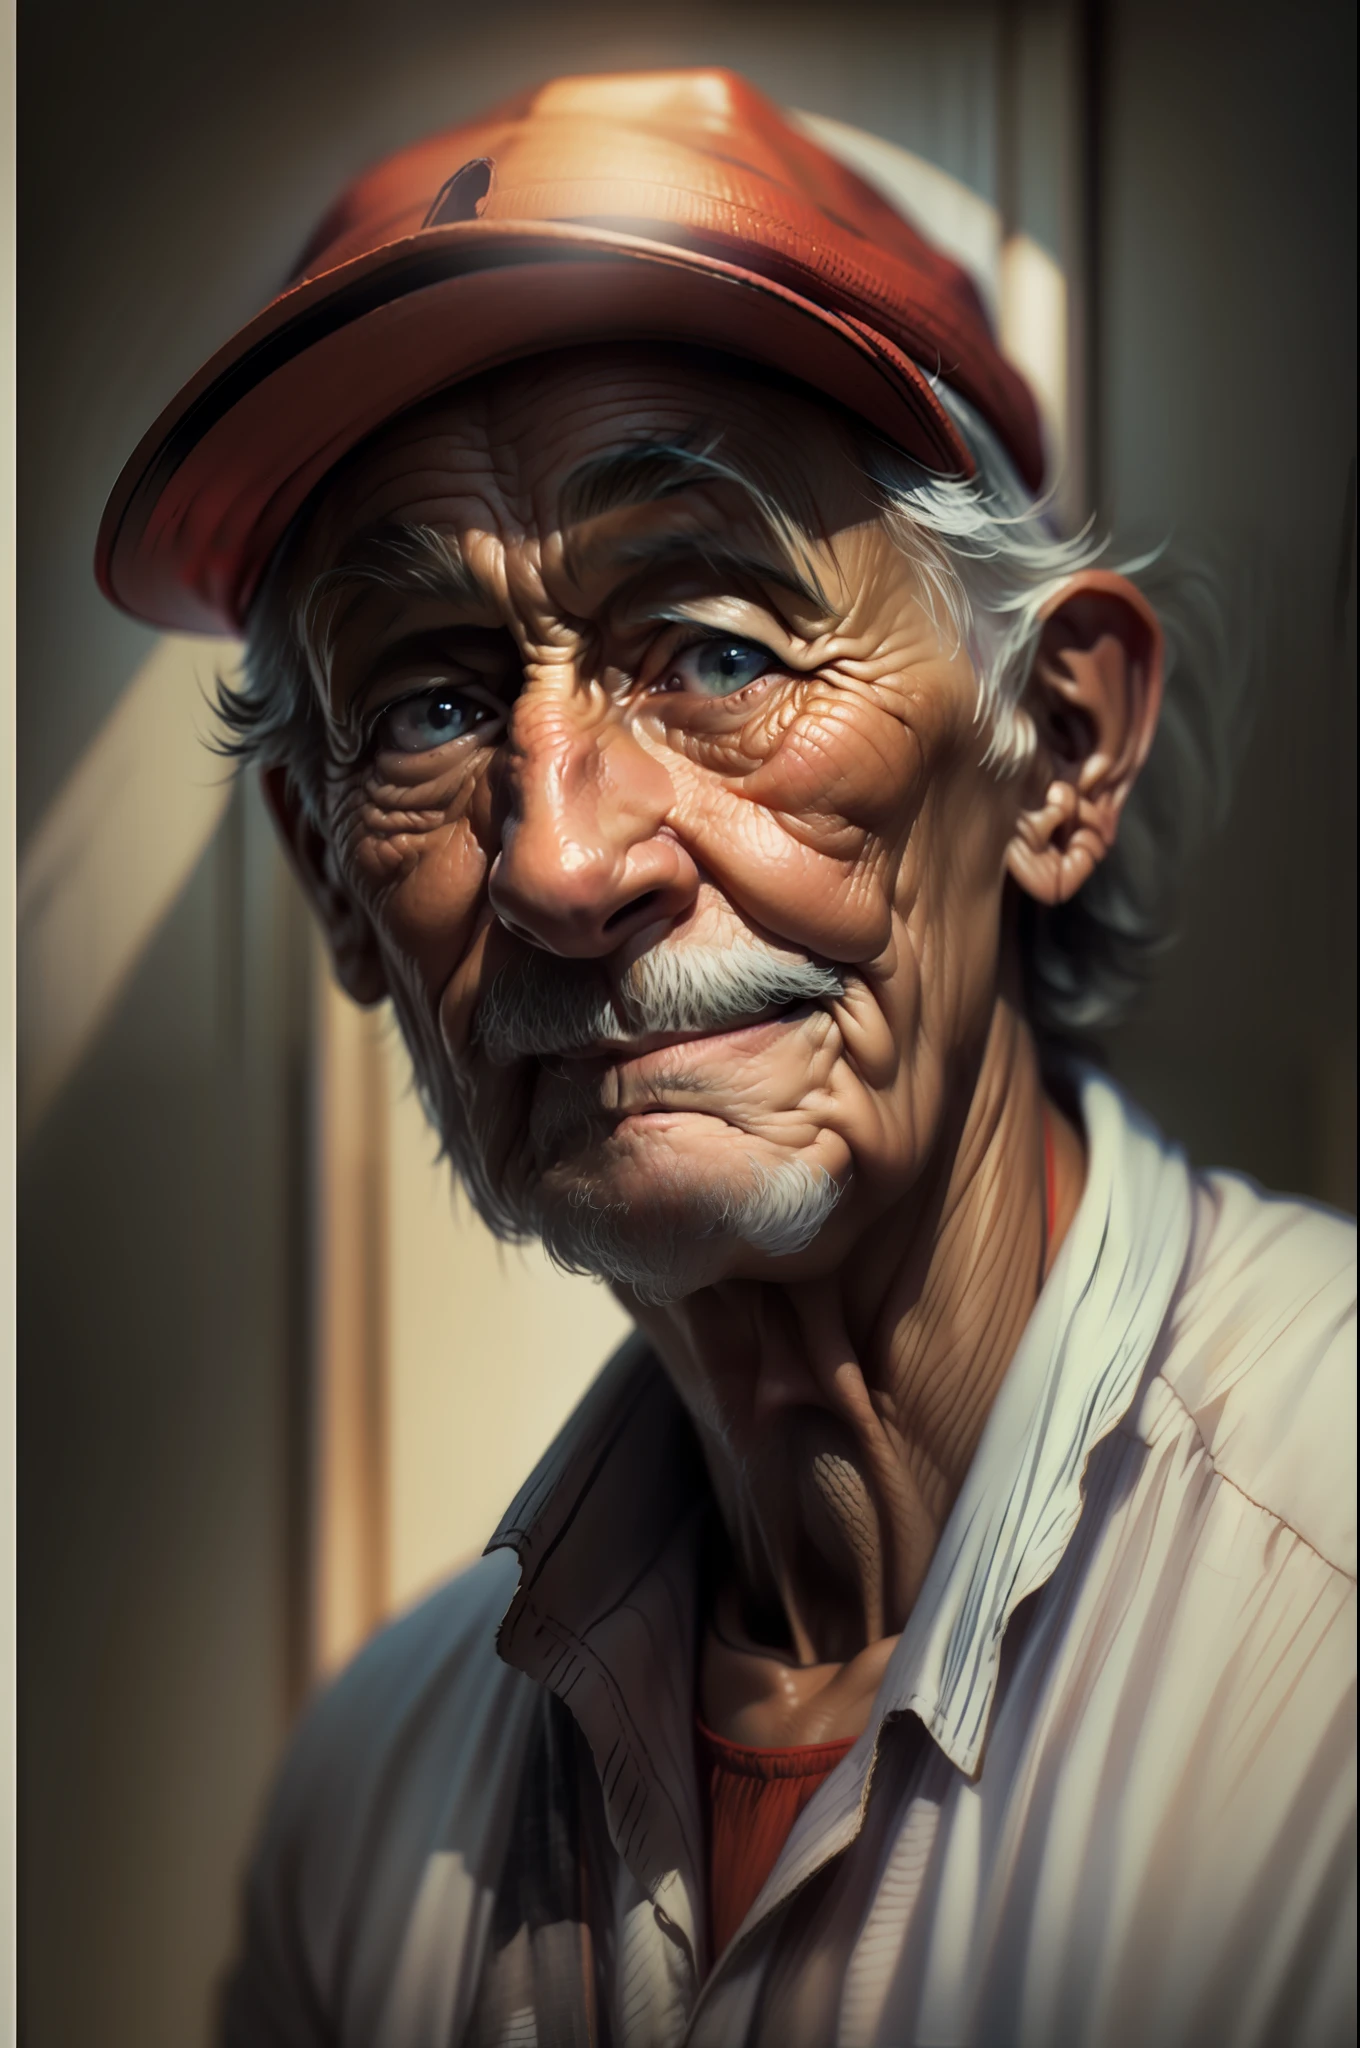 ((Obra maestra)), ((mejor calidad)), Retrato en color de un anciano, Usa un sombrero rojo, ojos abiertos, rumor